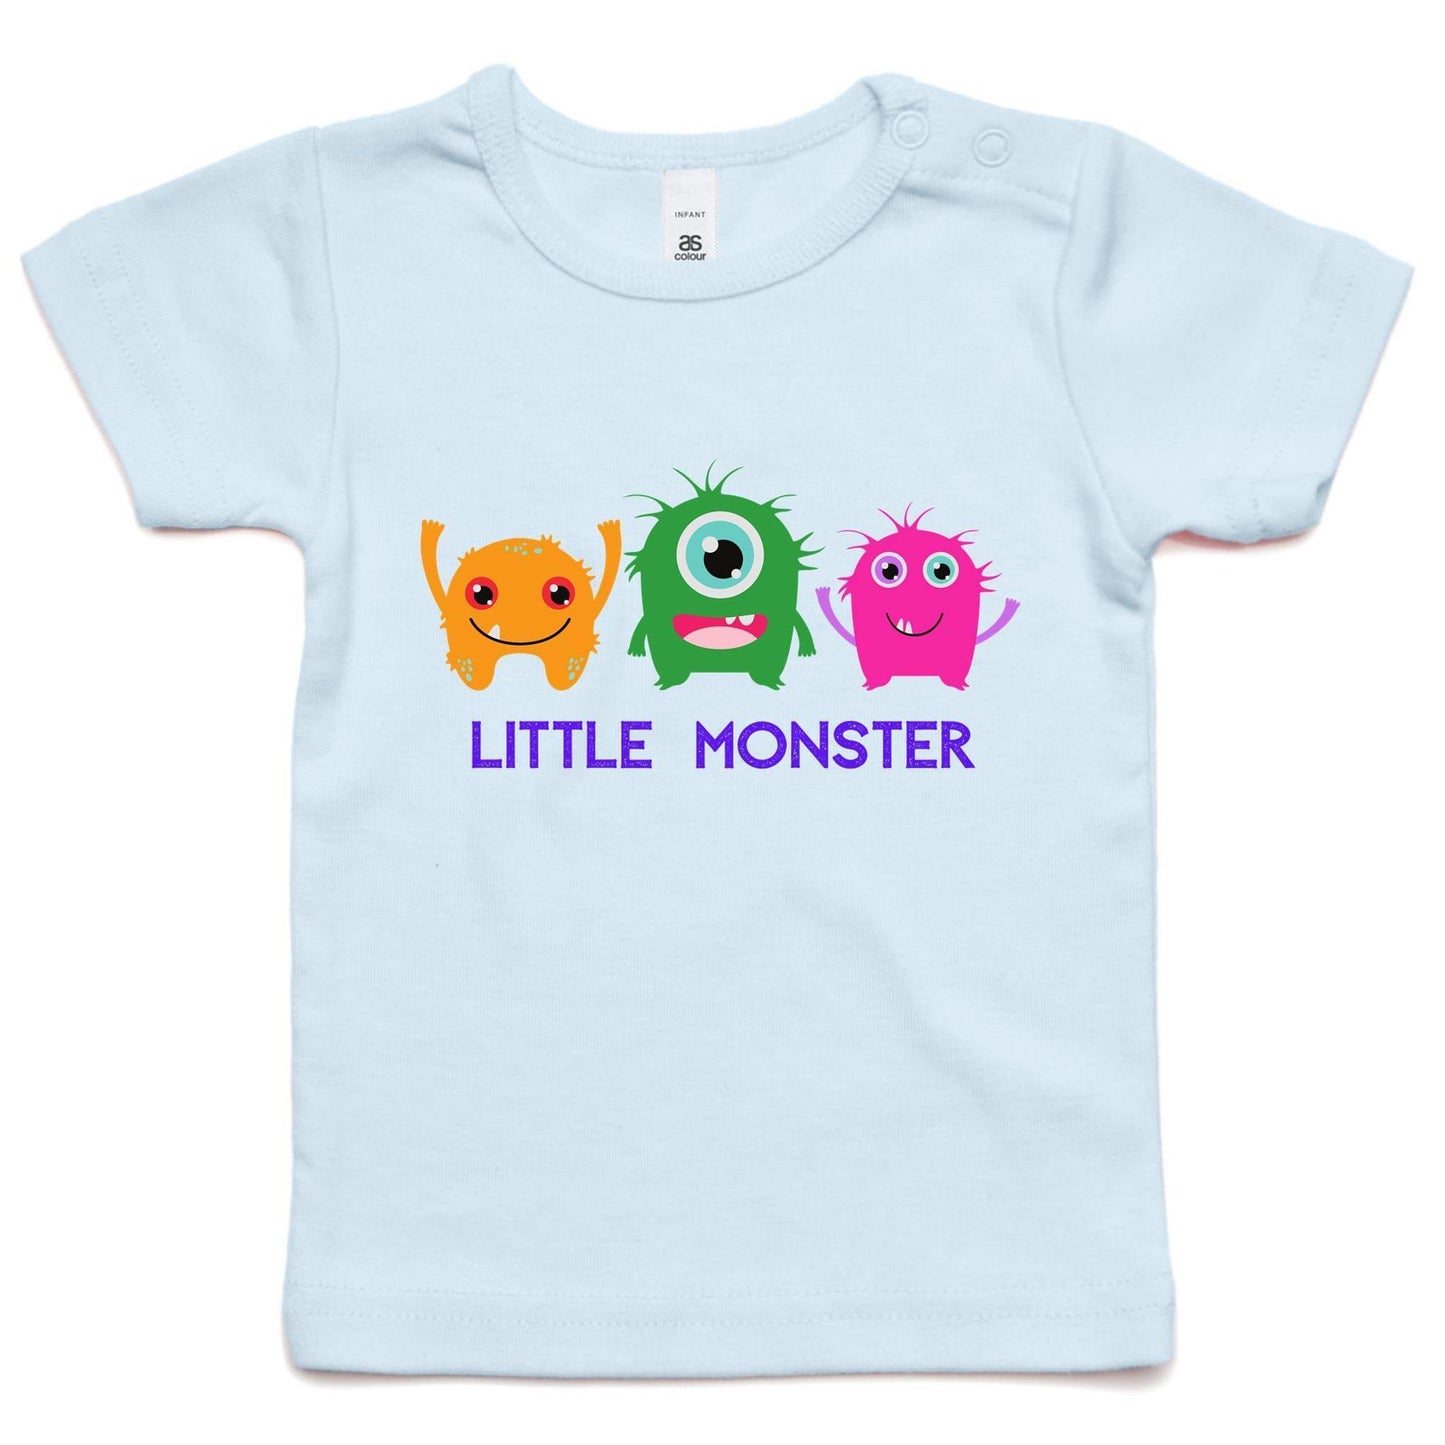 Little Monster - Baby T-shirt Powder Blue Baby T-shirt kids